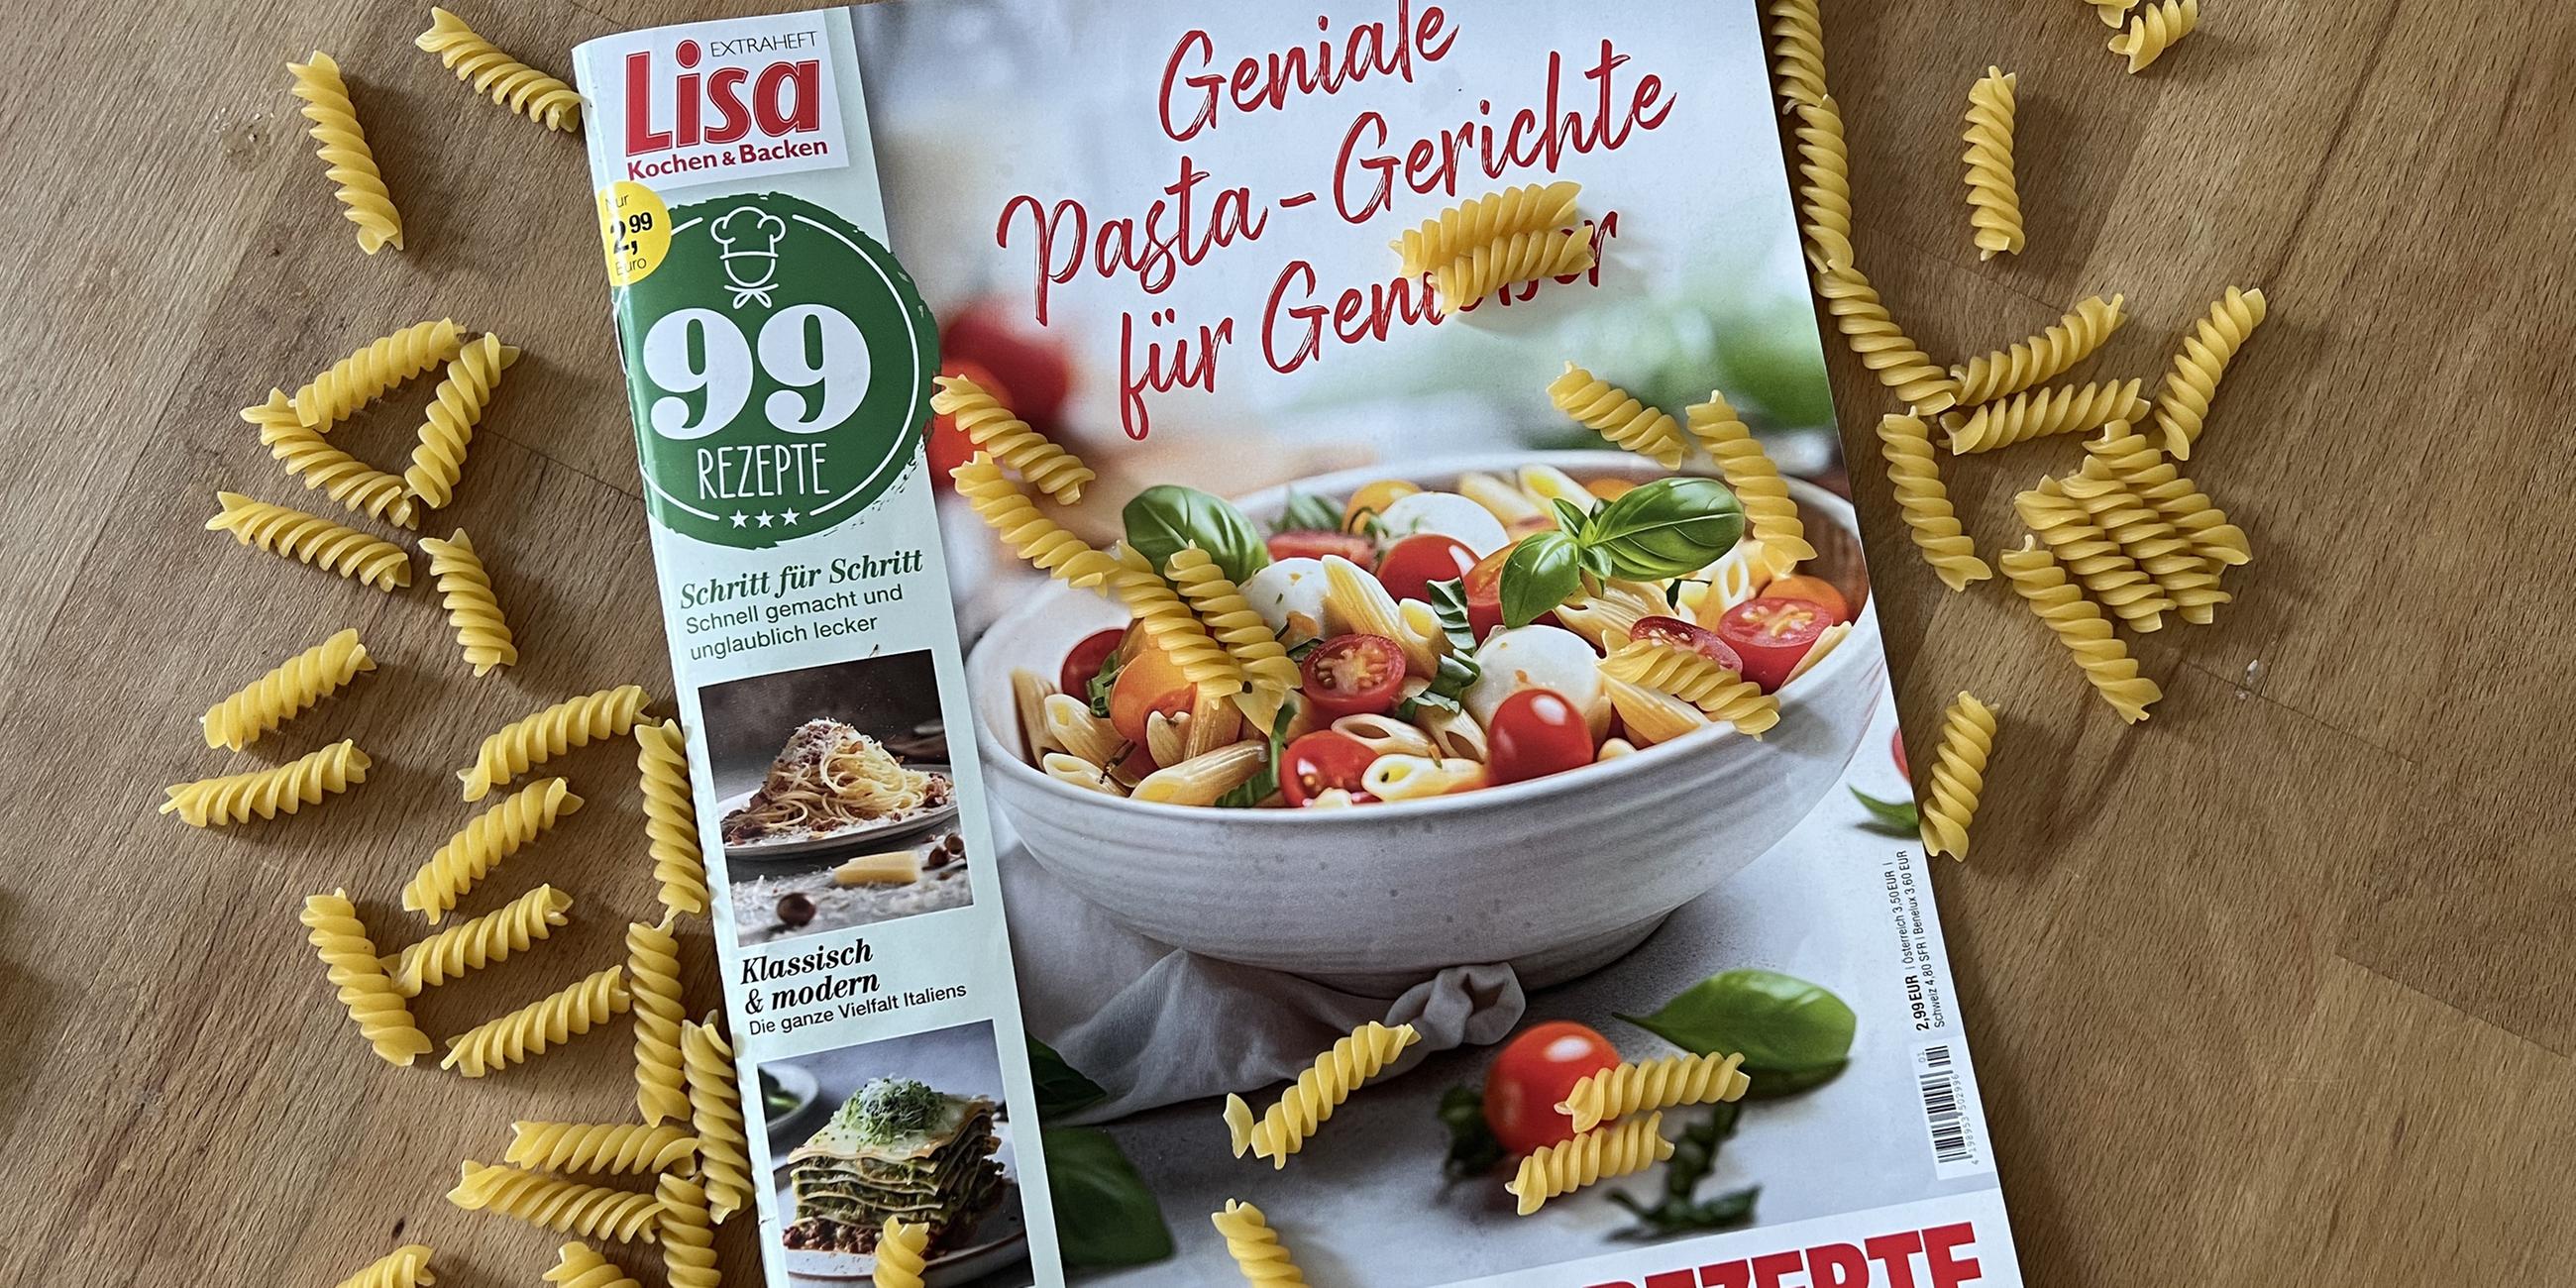 Das Cover einer (von einer KI-generierten) Kochzeitschrift vom Burda-Verlag